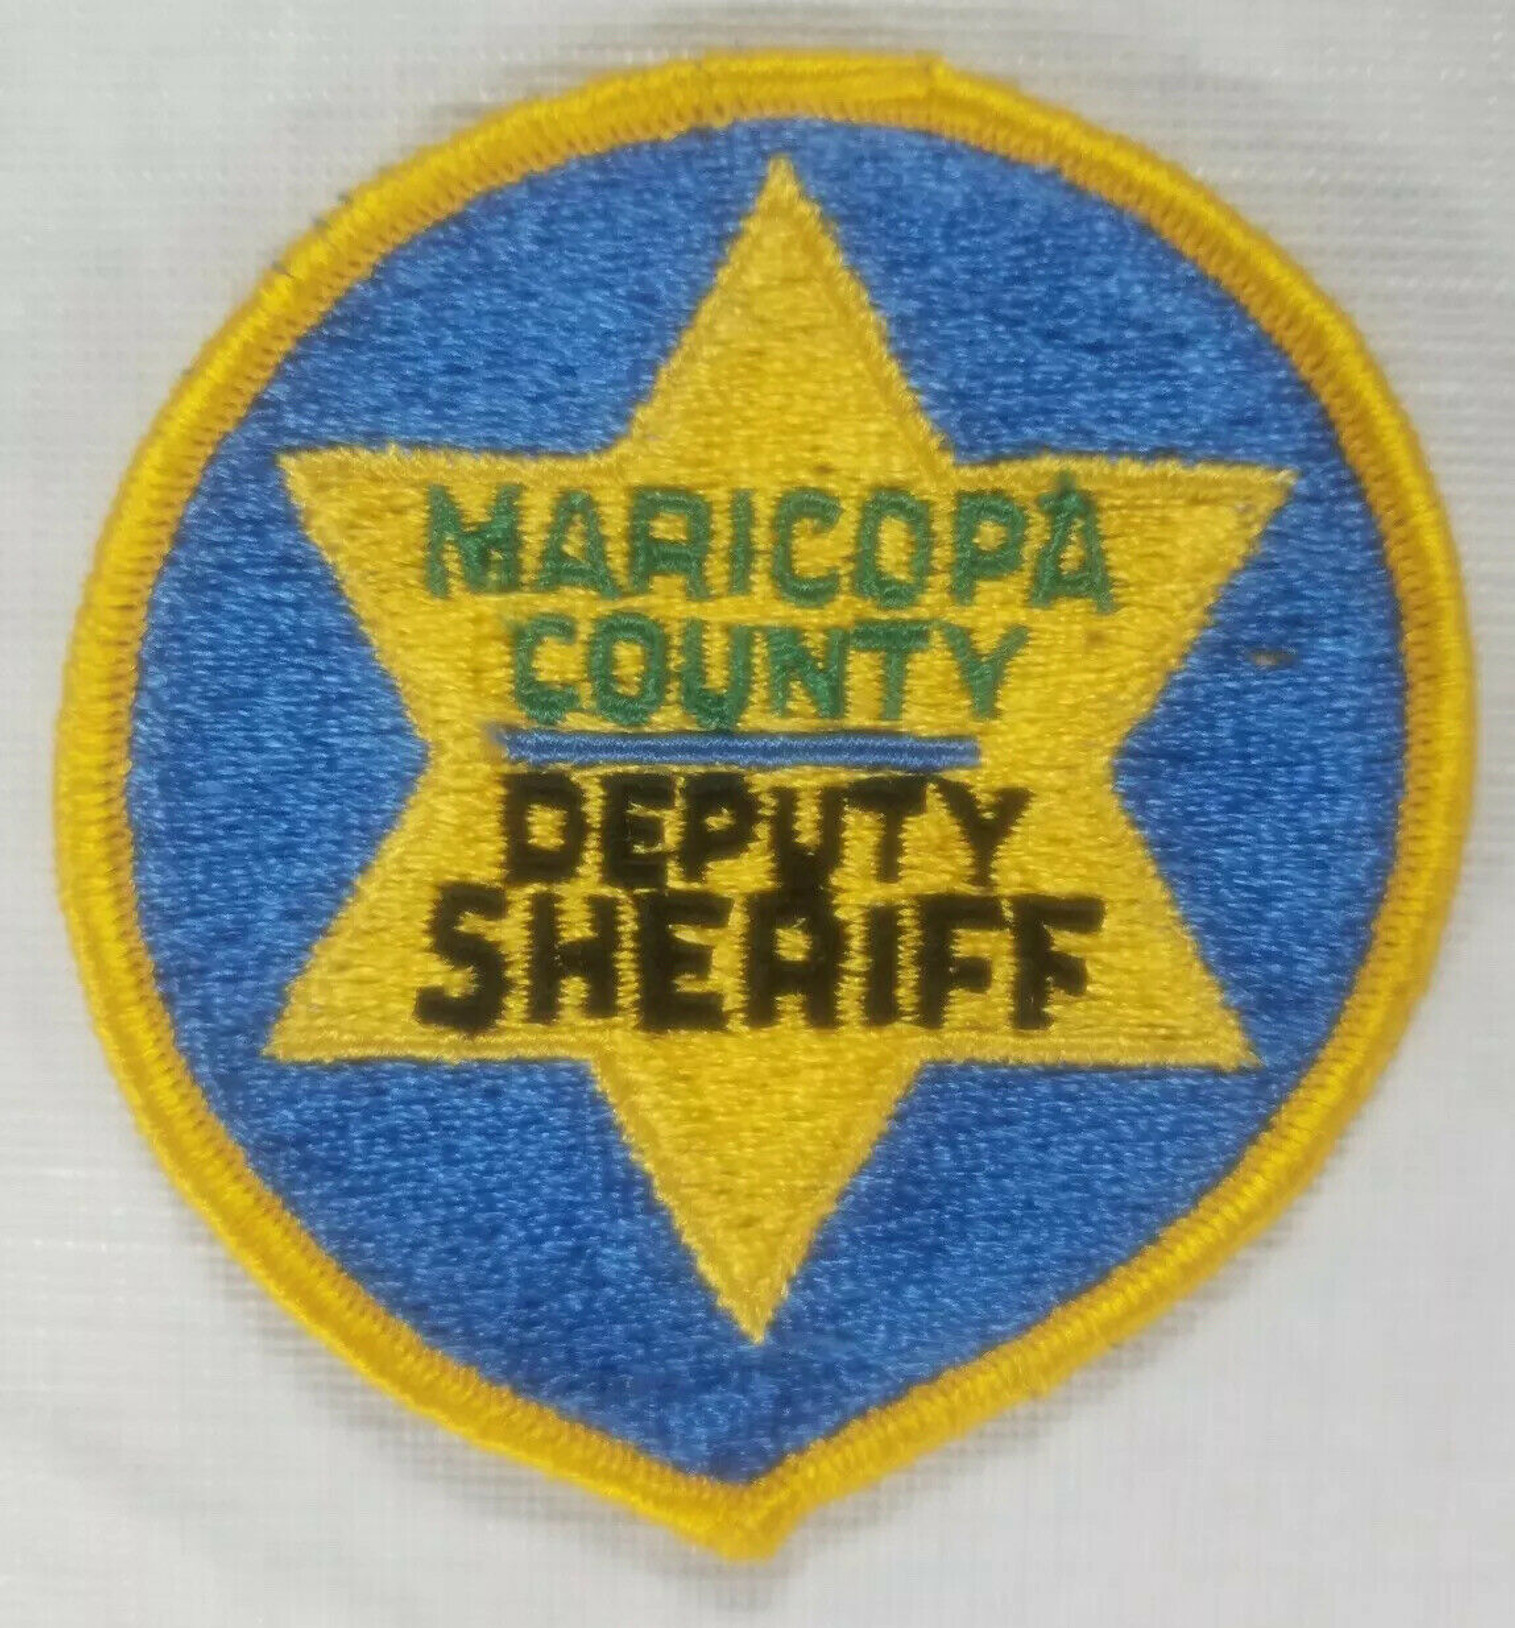 Maricopa County Deputy Sheriff AZ Police Patch